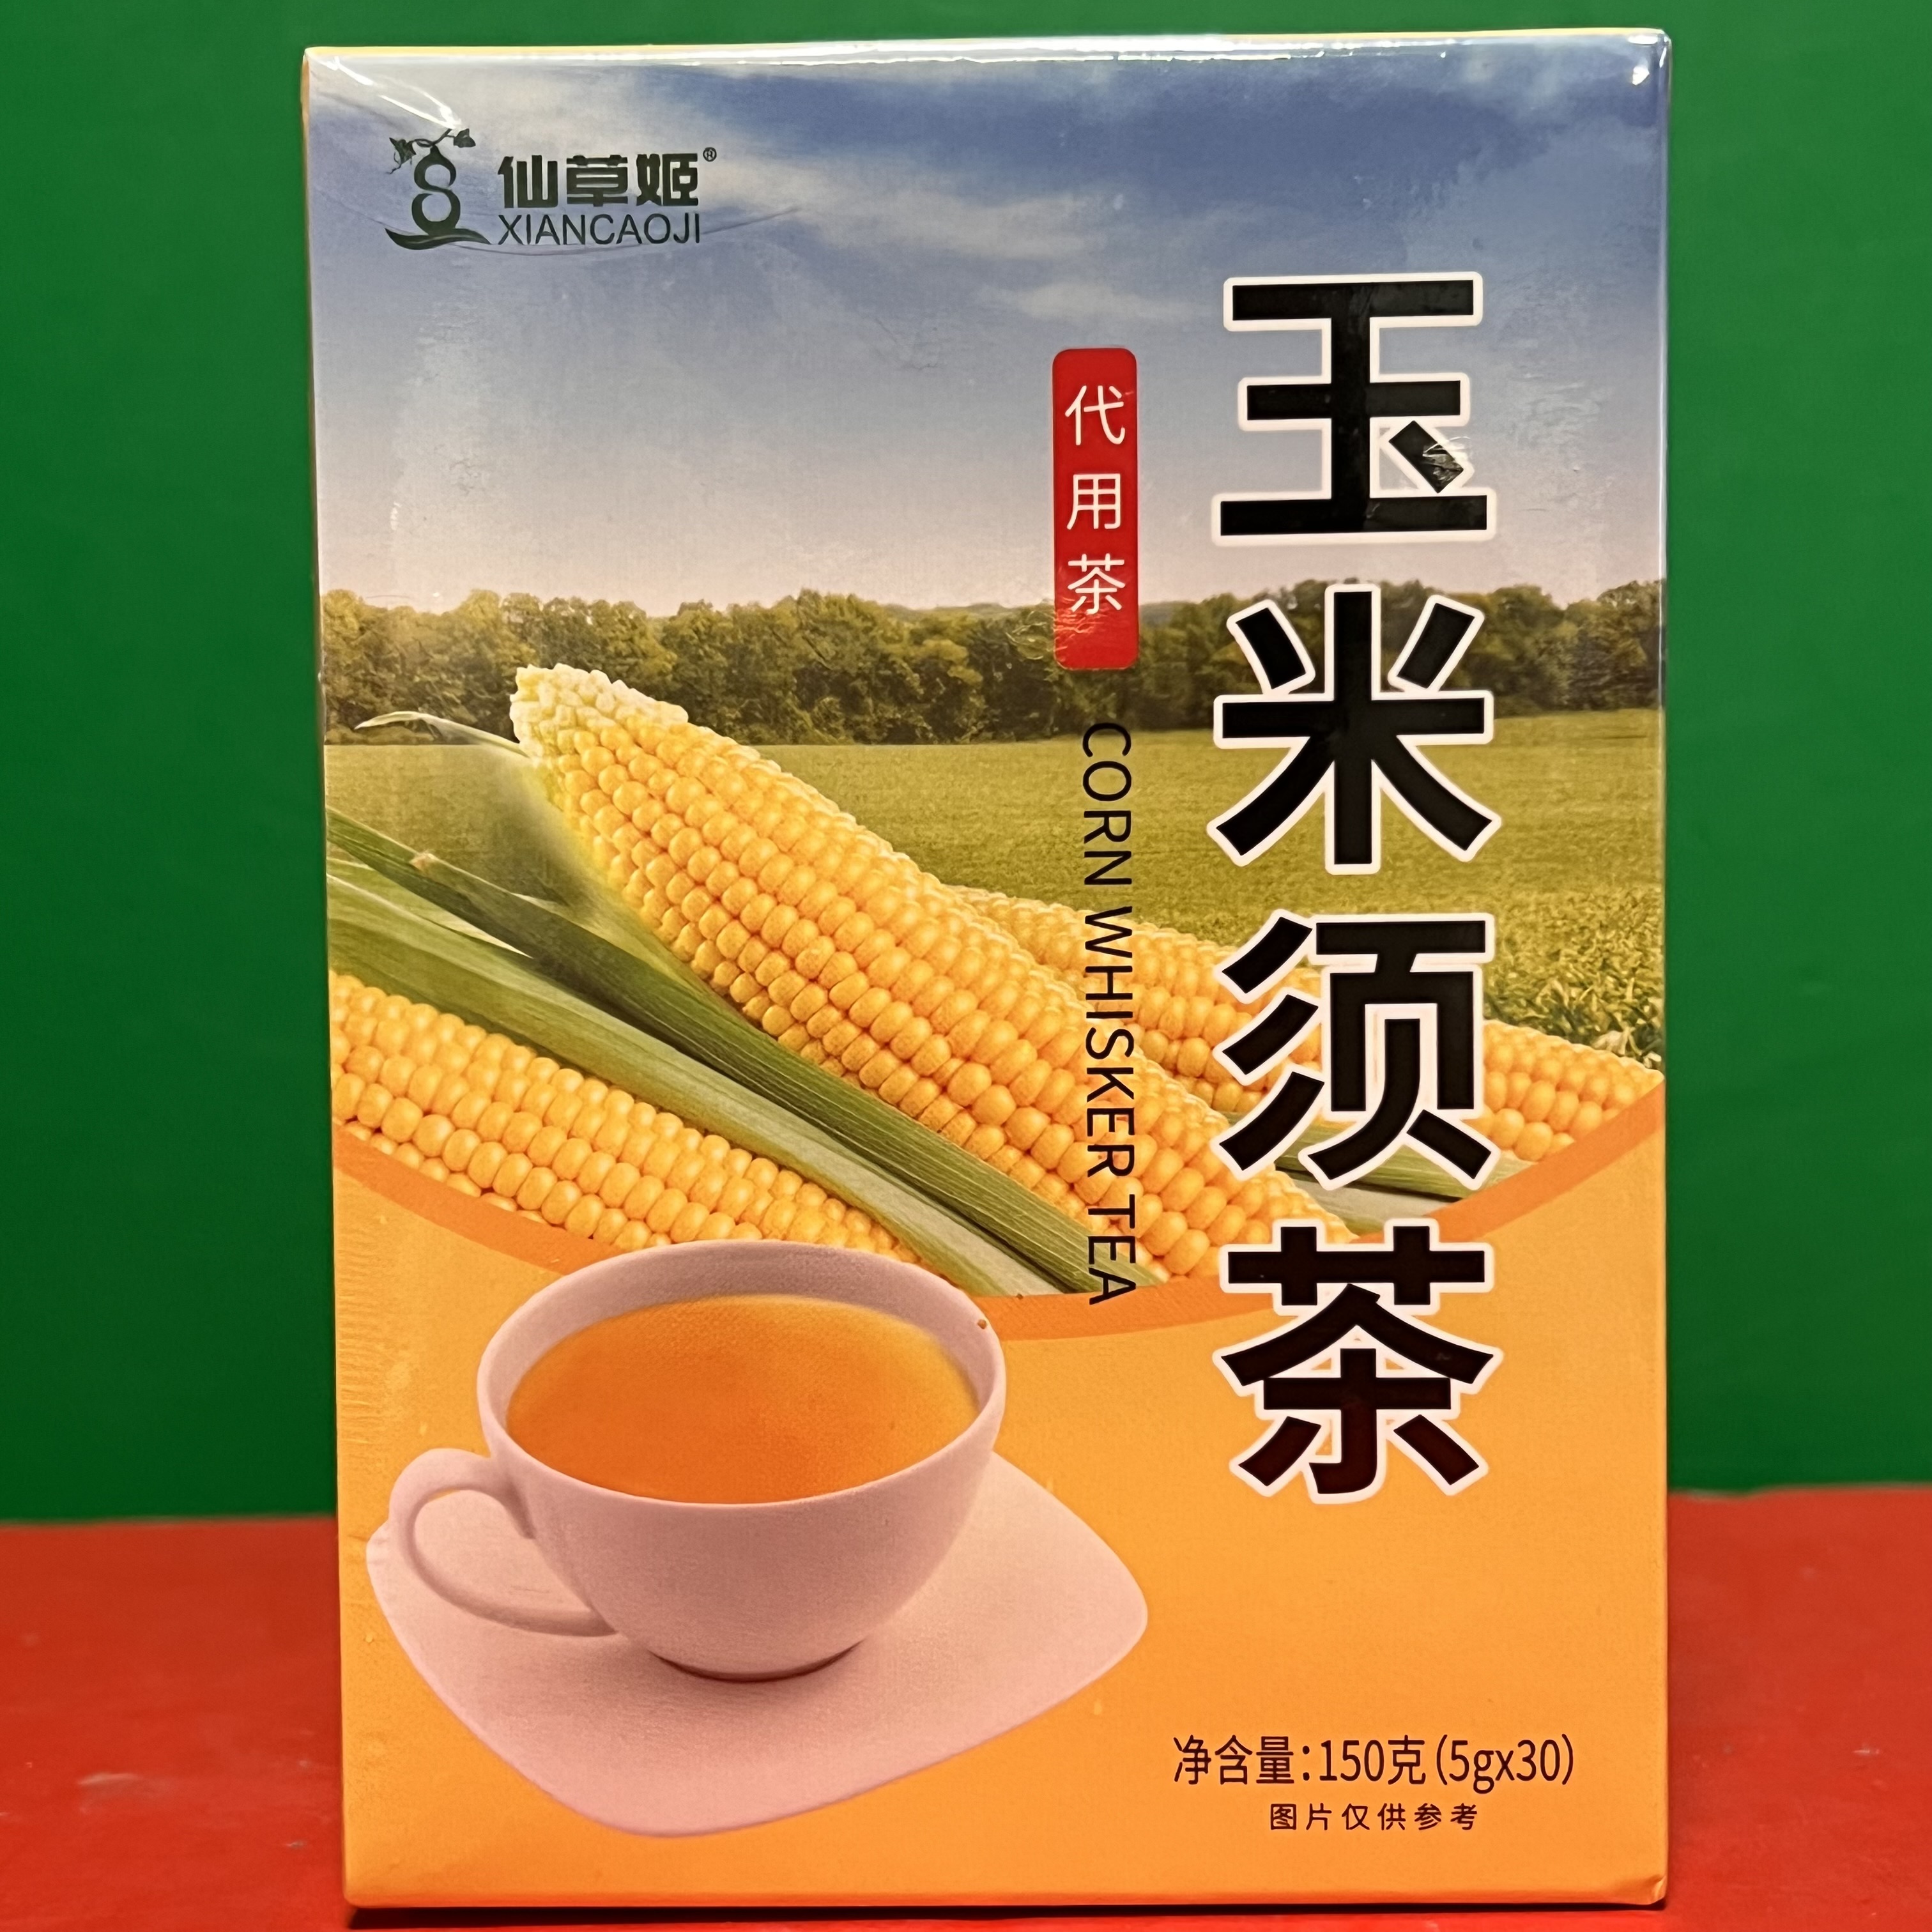 元气森林出品的纤茶-玉米须茶